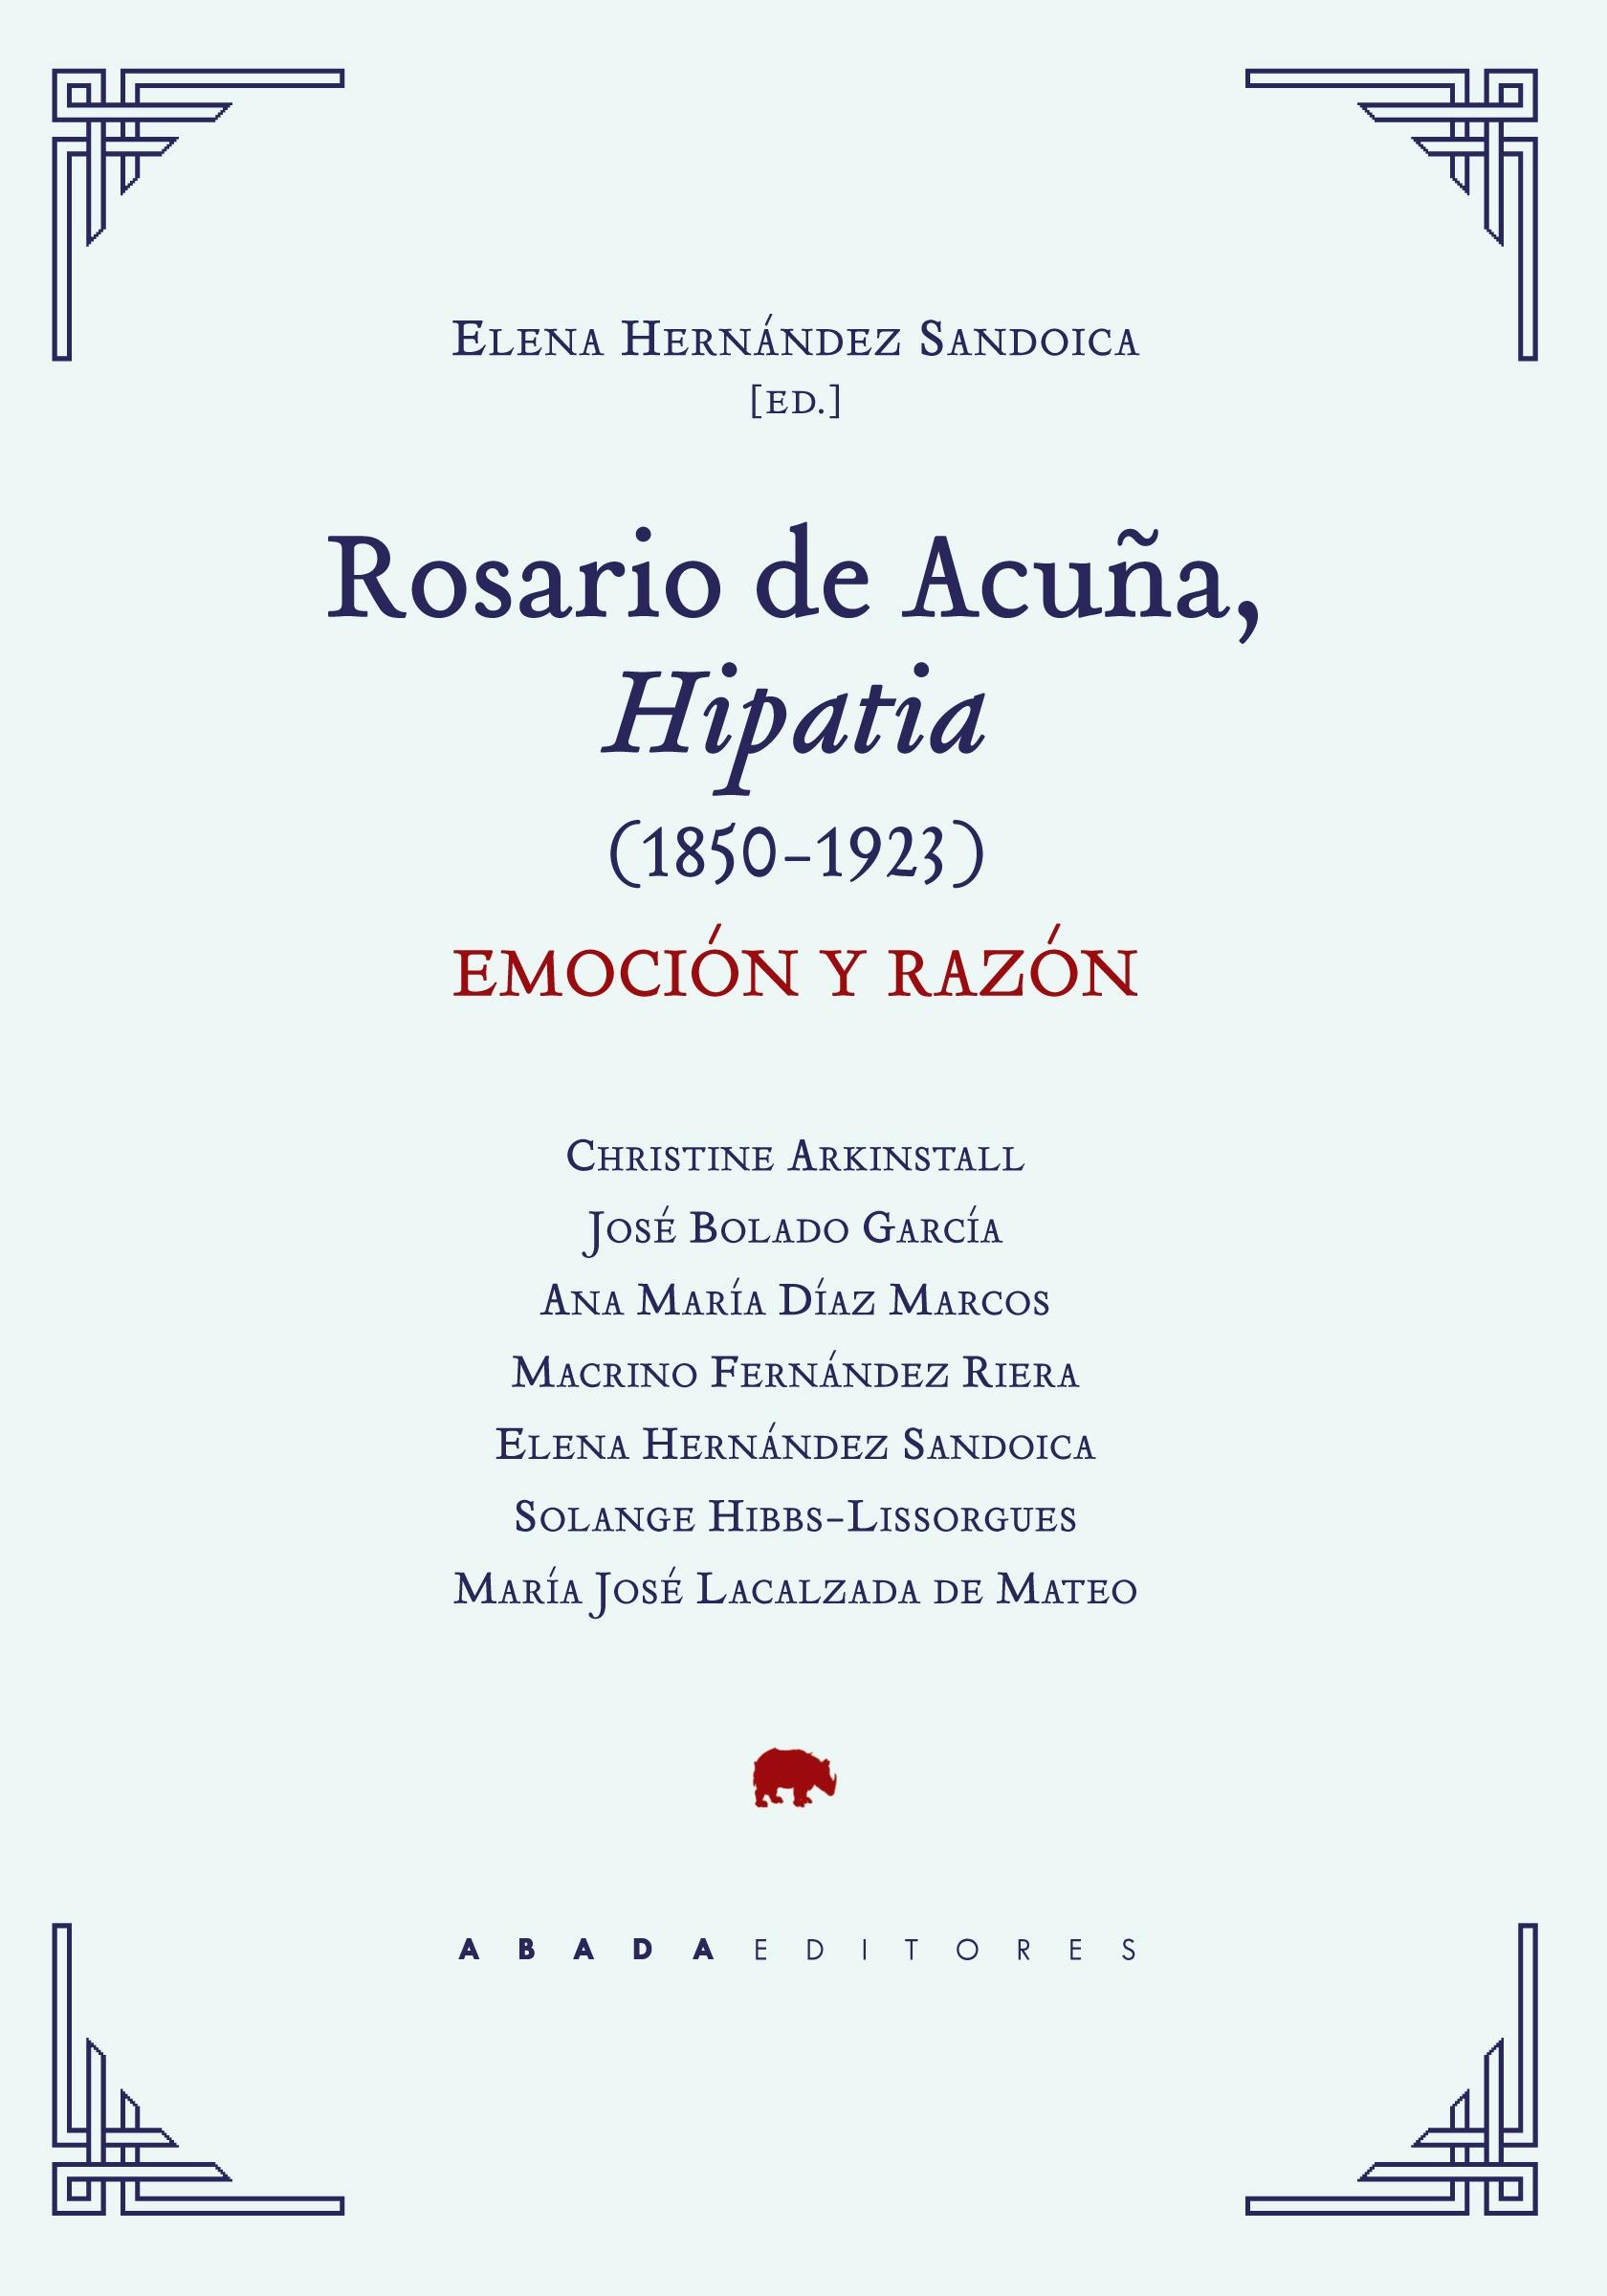 Rosario de Acuña, Hipatia (1850-1923) "Emoción y razón"